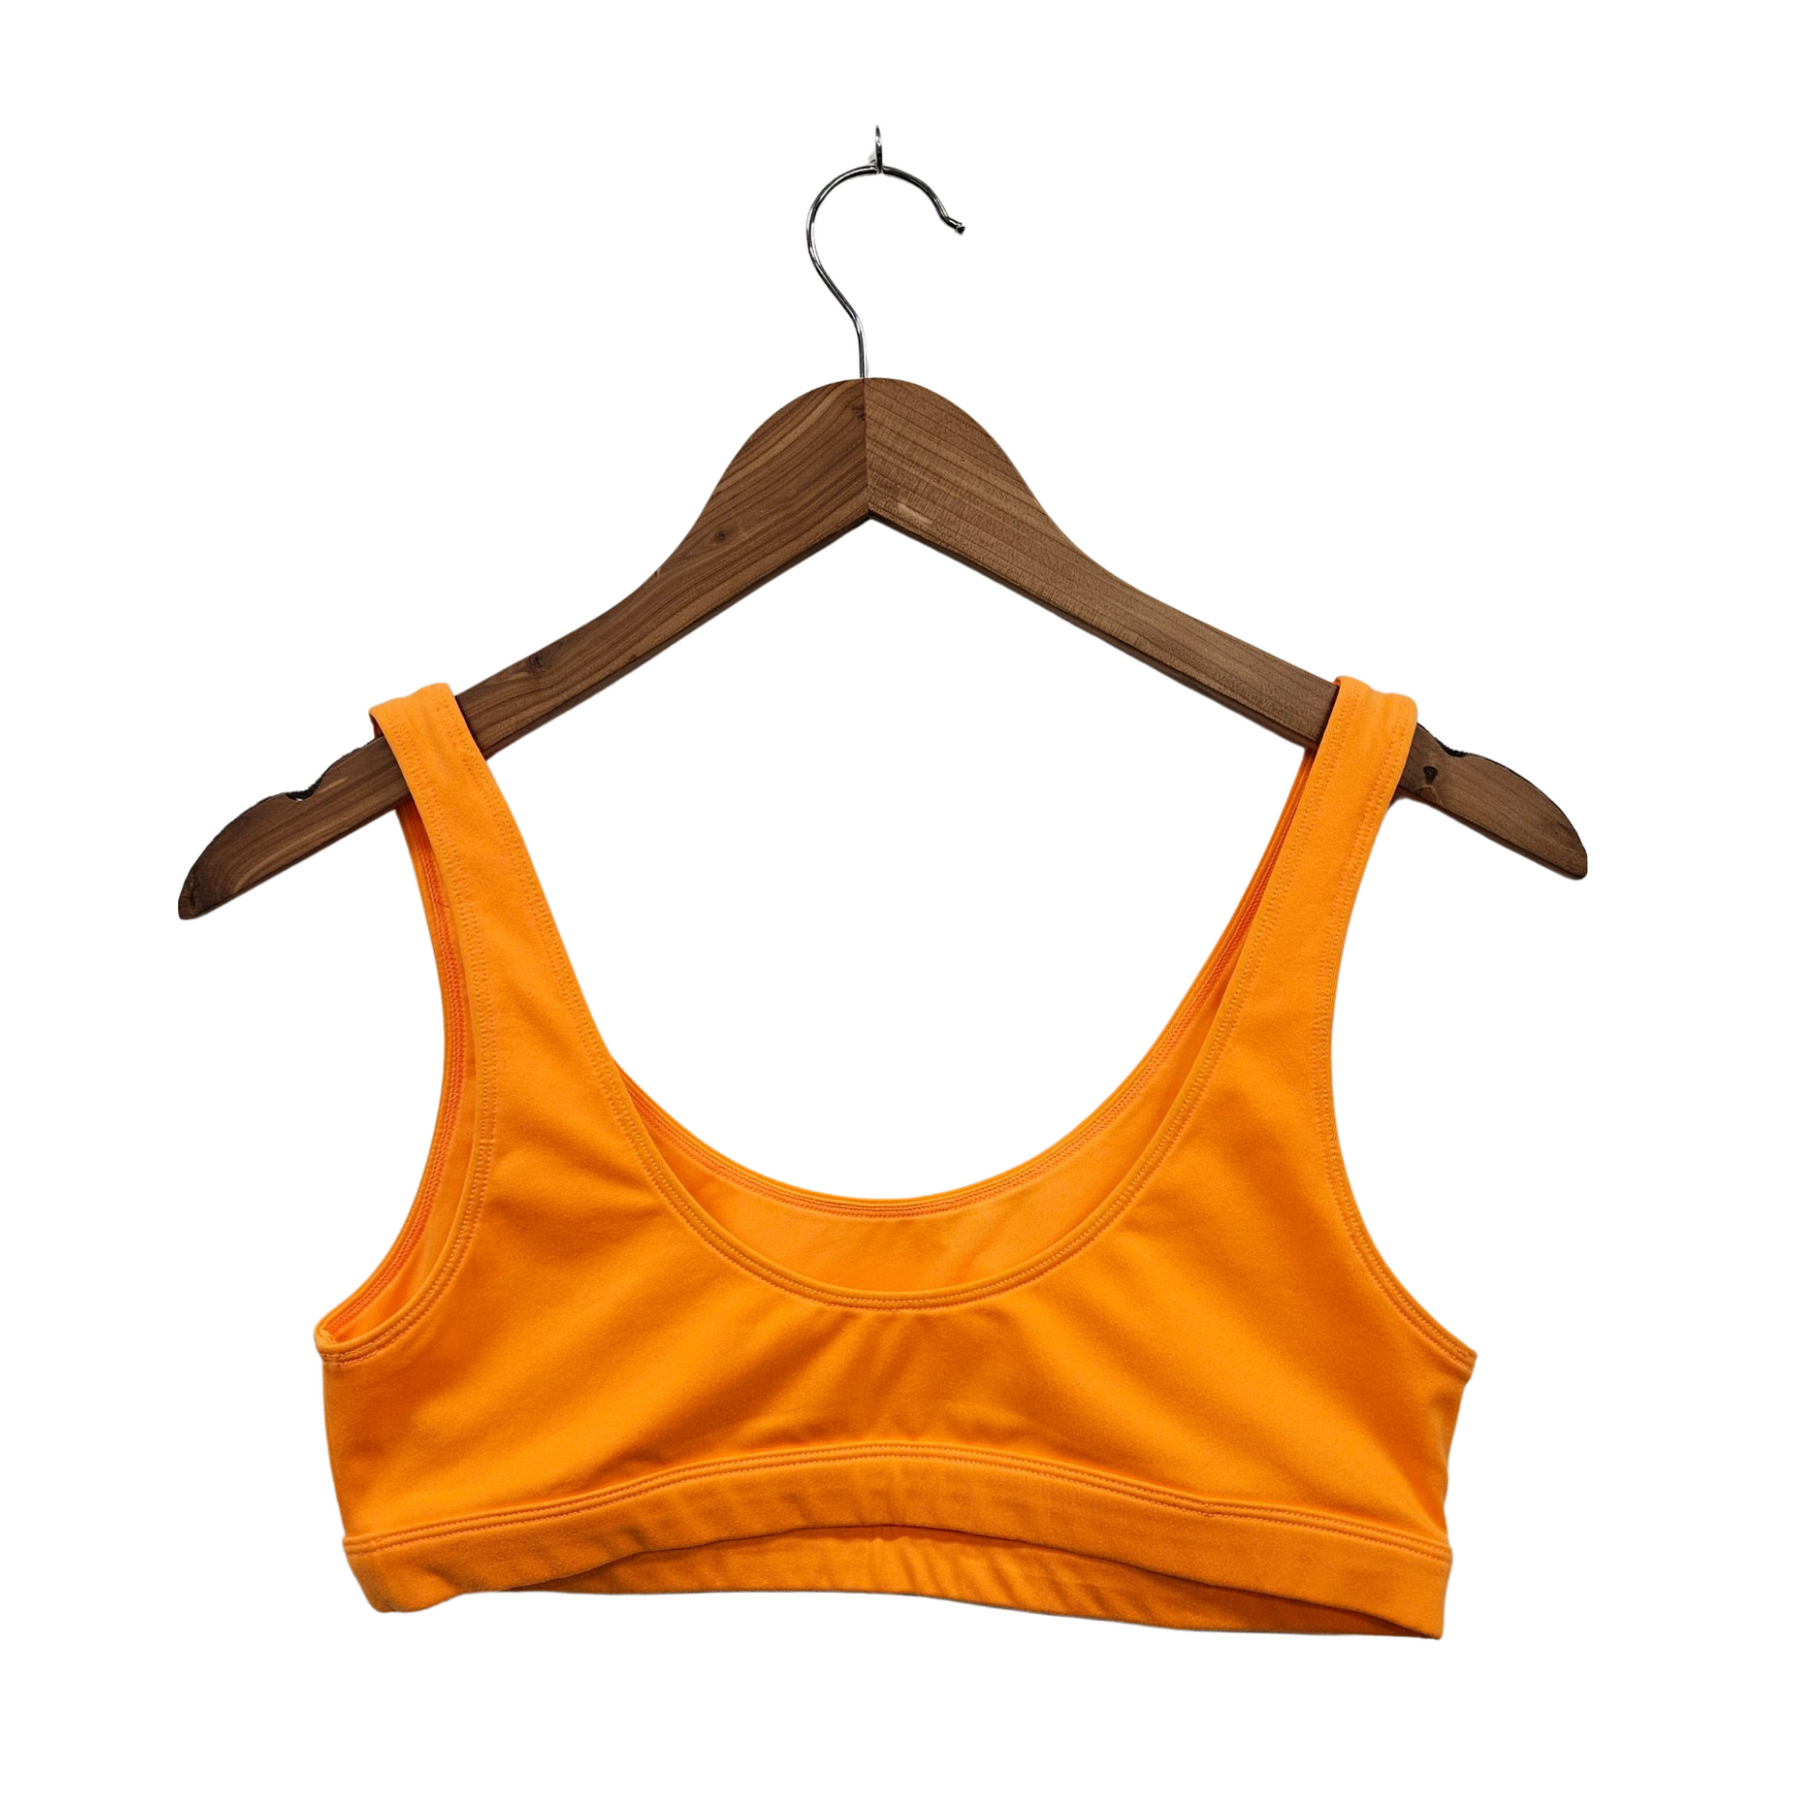 Alo Yoga Sports Bra - Size Medium – shopstyle360